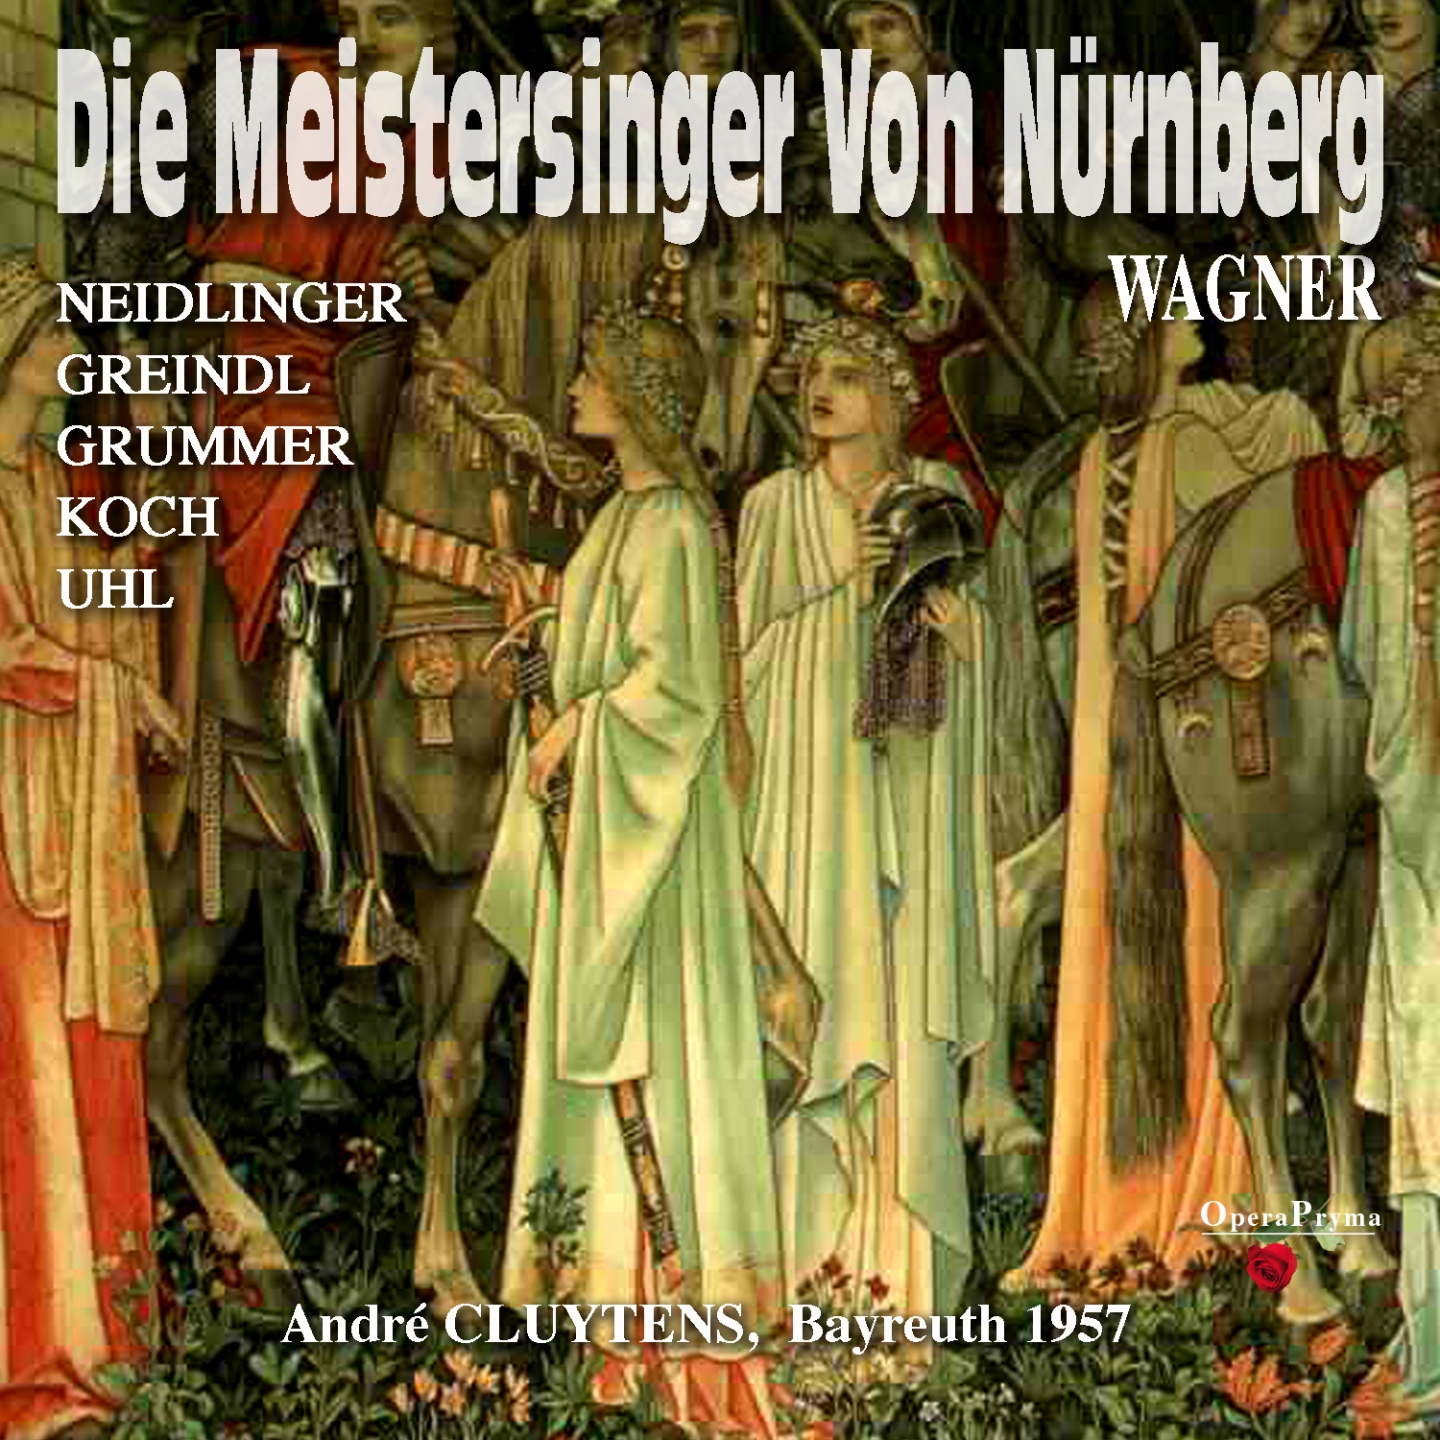 Die Meistersinger von Nü rnberg, Act I: " Das sind nur die Namen, nun lernt sie singen" David